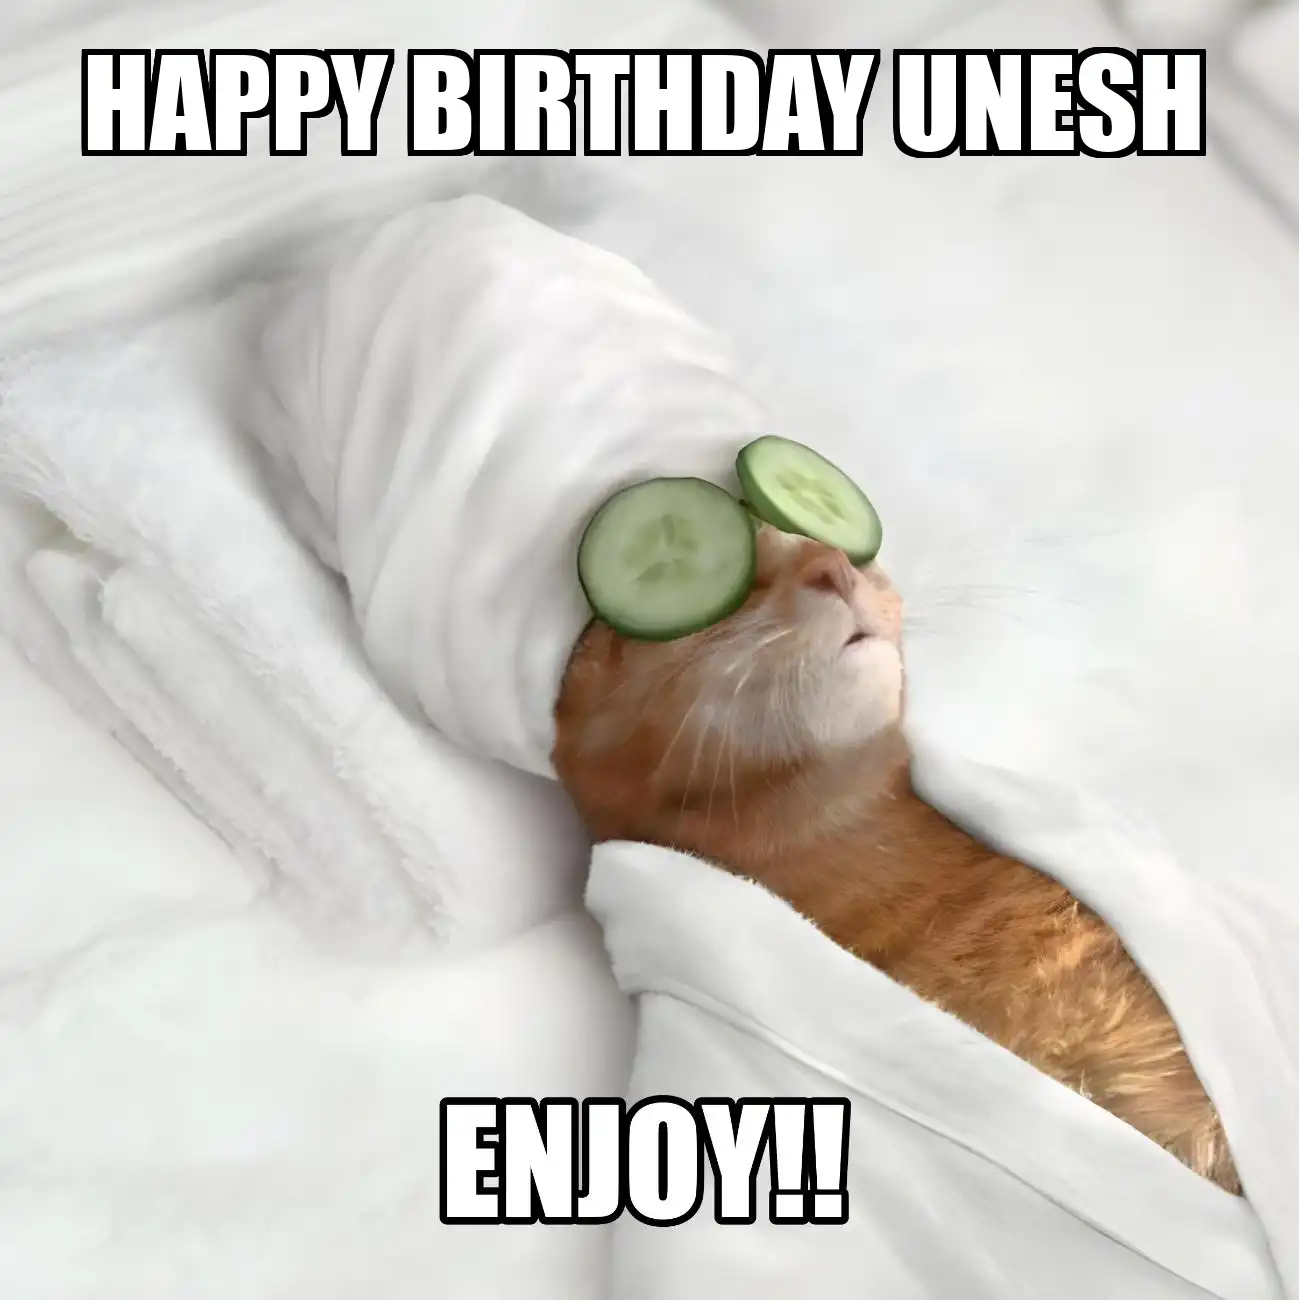 Happy Birthday Unesh Enjoy Cat Meme